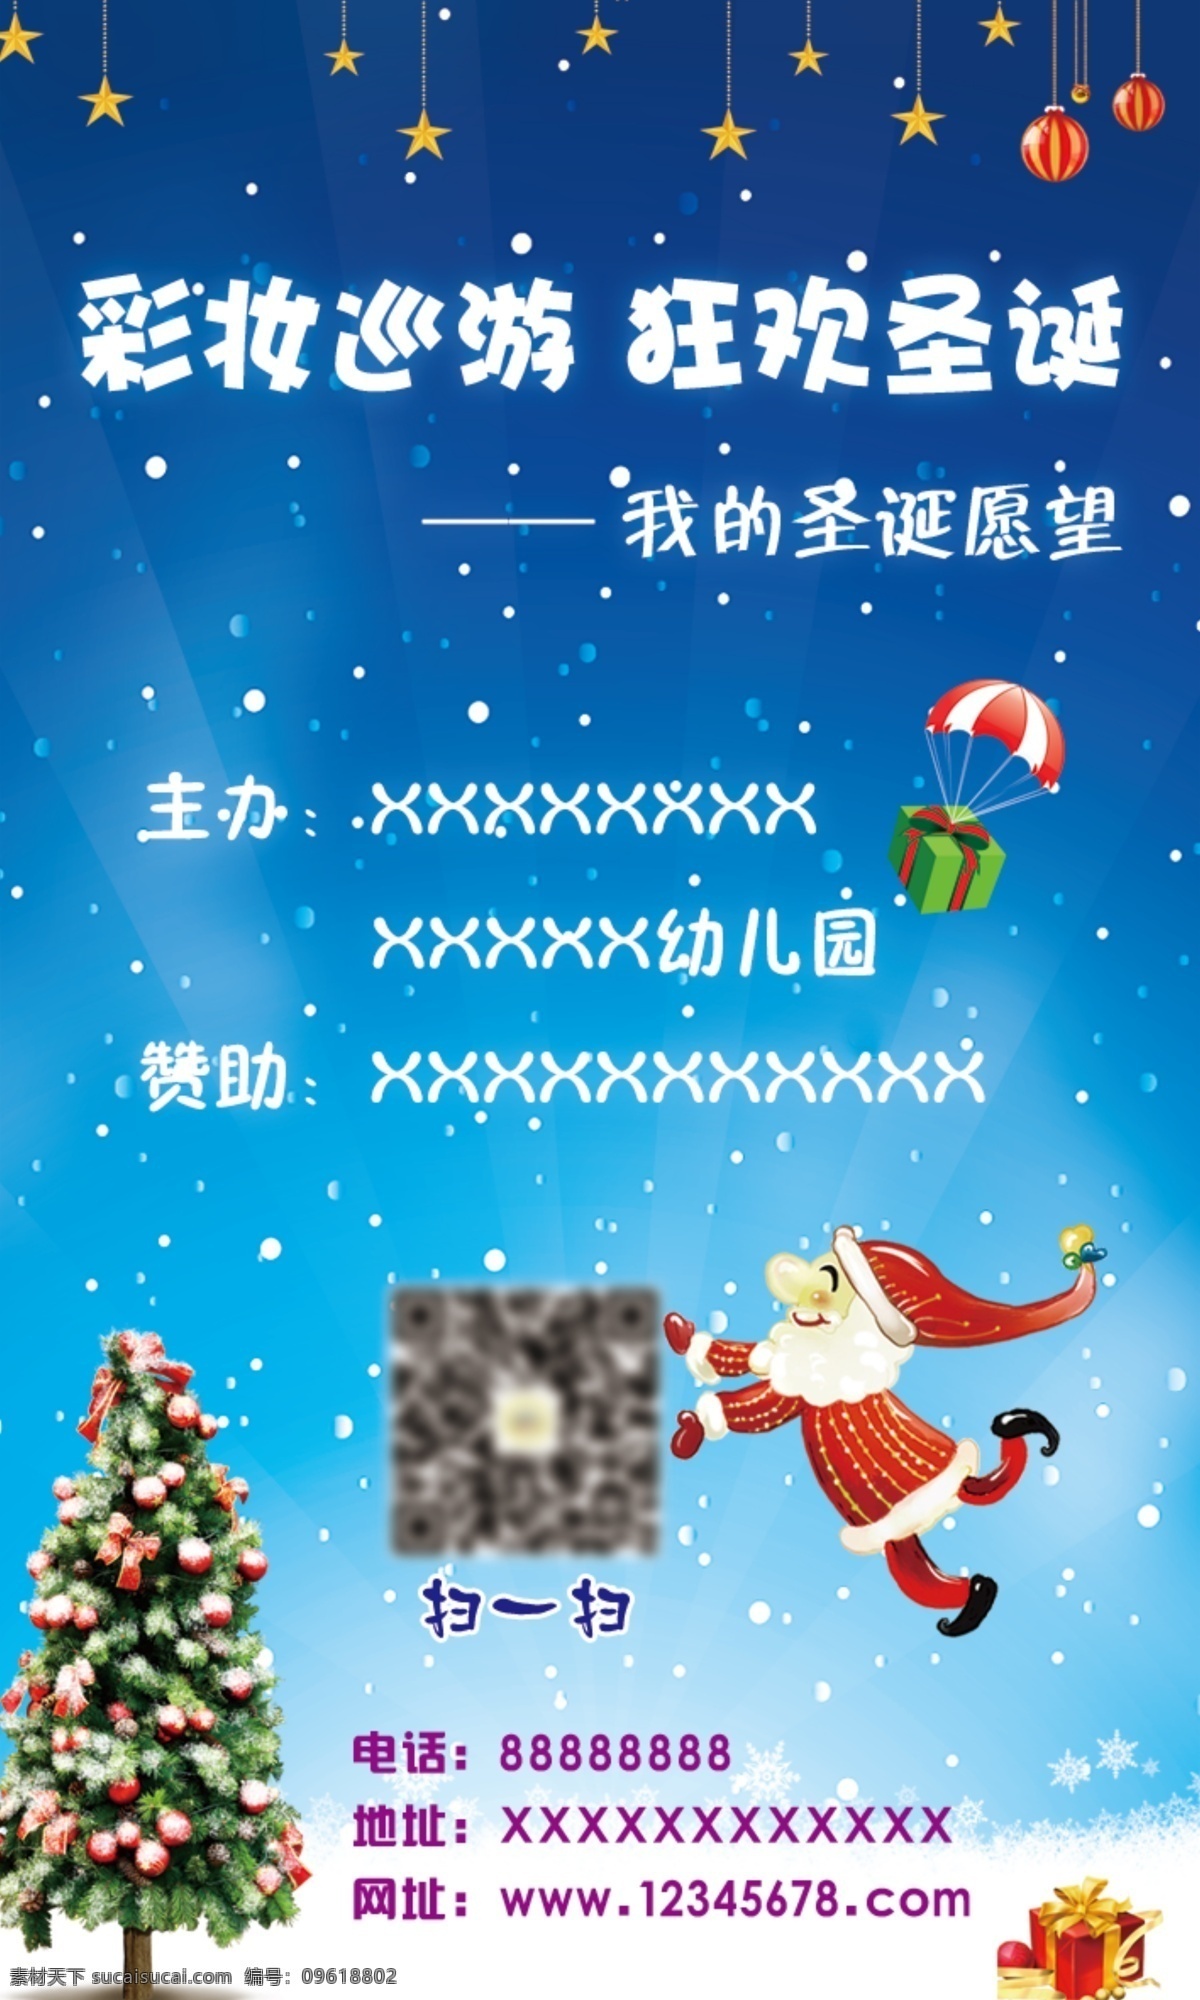 狂欢 圣诞节 愿望 礼物 海报 贴纸 标签 狂欢圣诞节 圣诞愿望 圣诞老人 蓝色